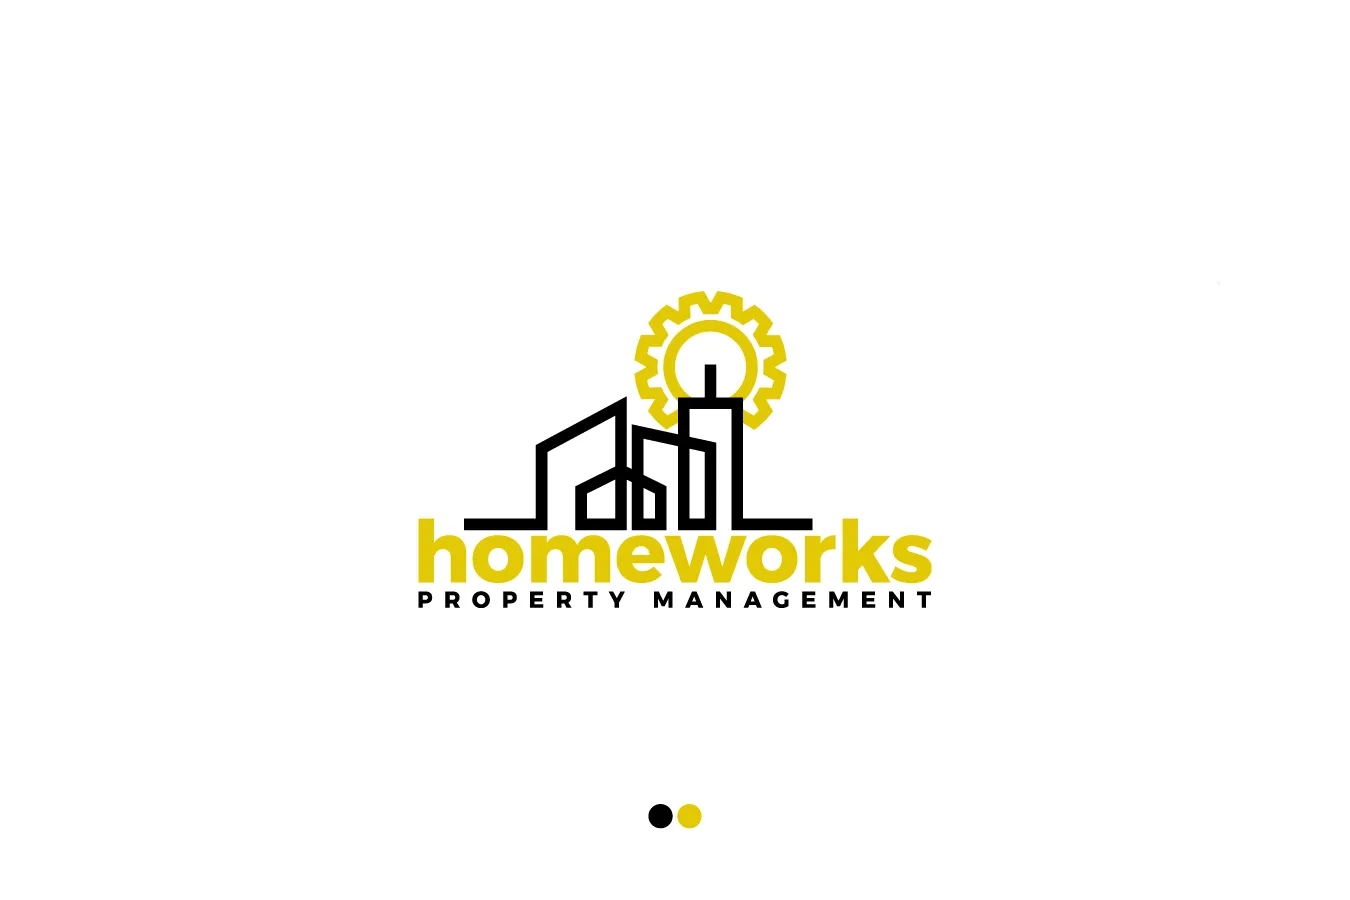 homeworks rental properties